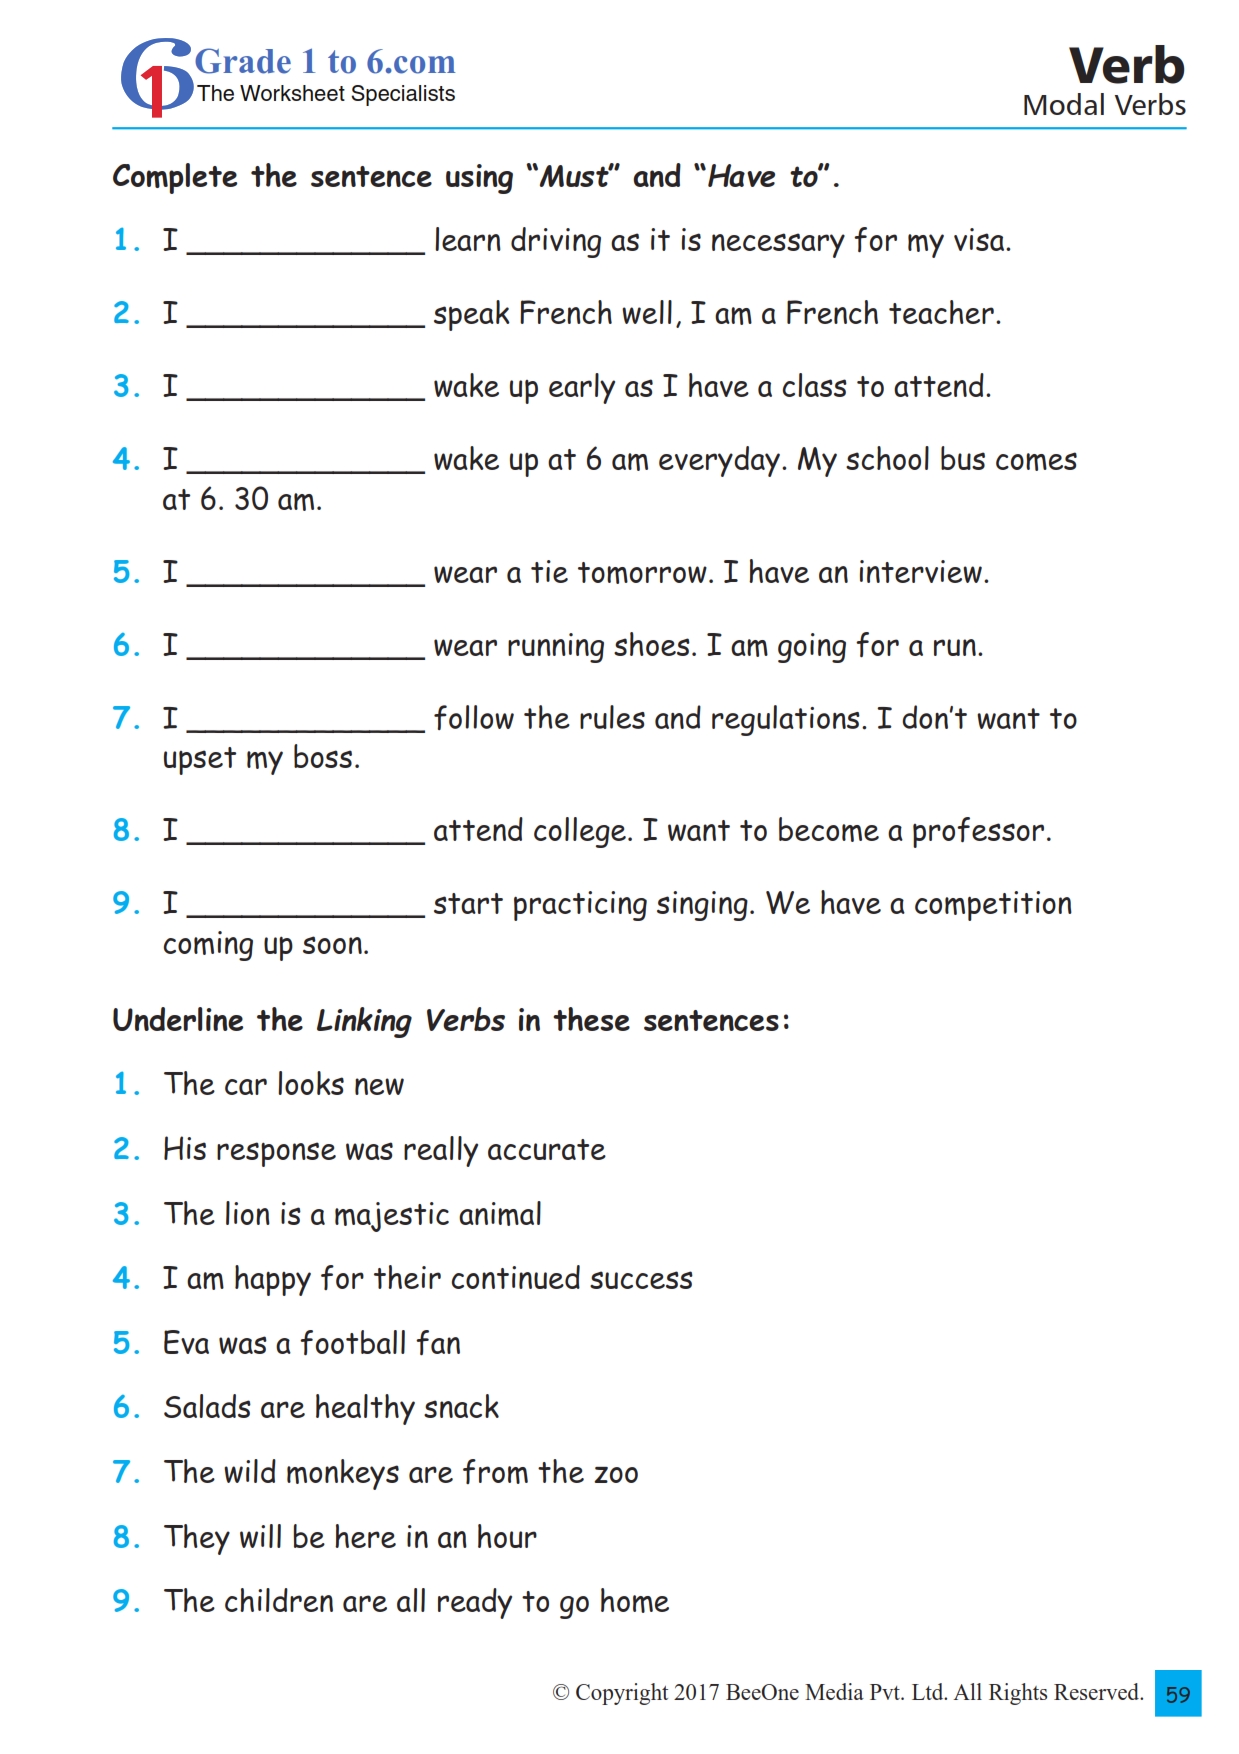 modal-verbs-online-exercise-for-grade-5-verbs-worksheets-modal-verbs